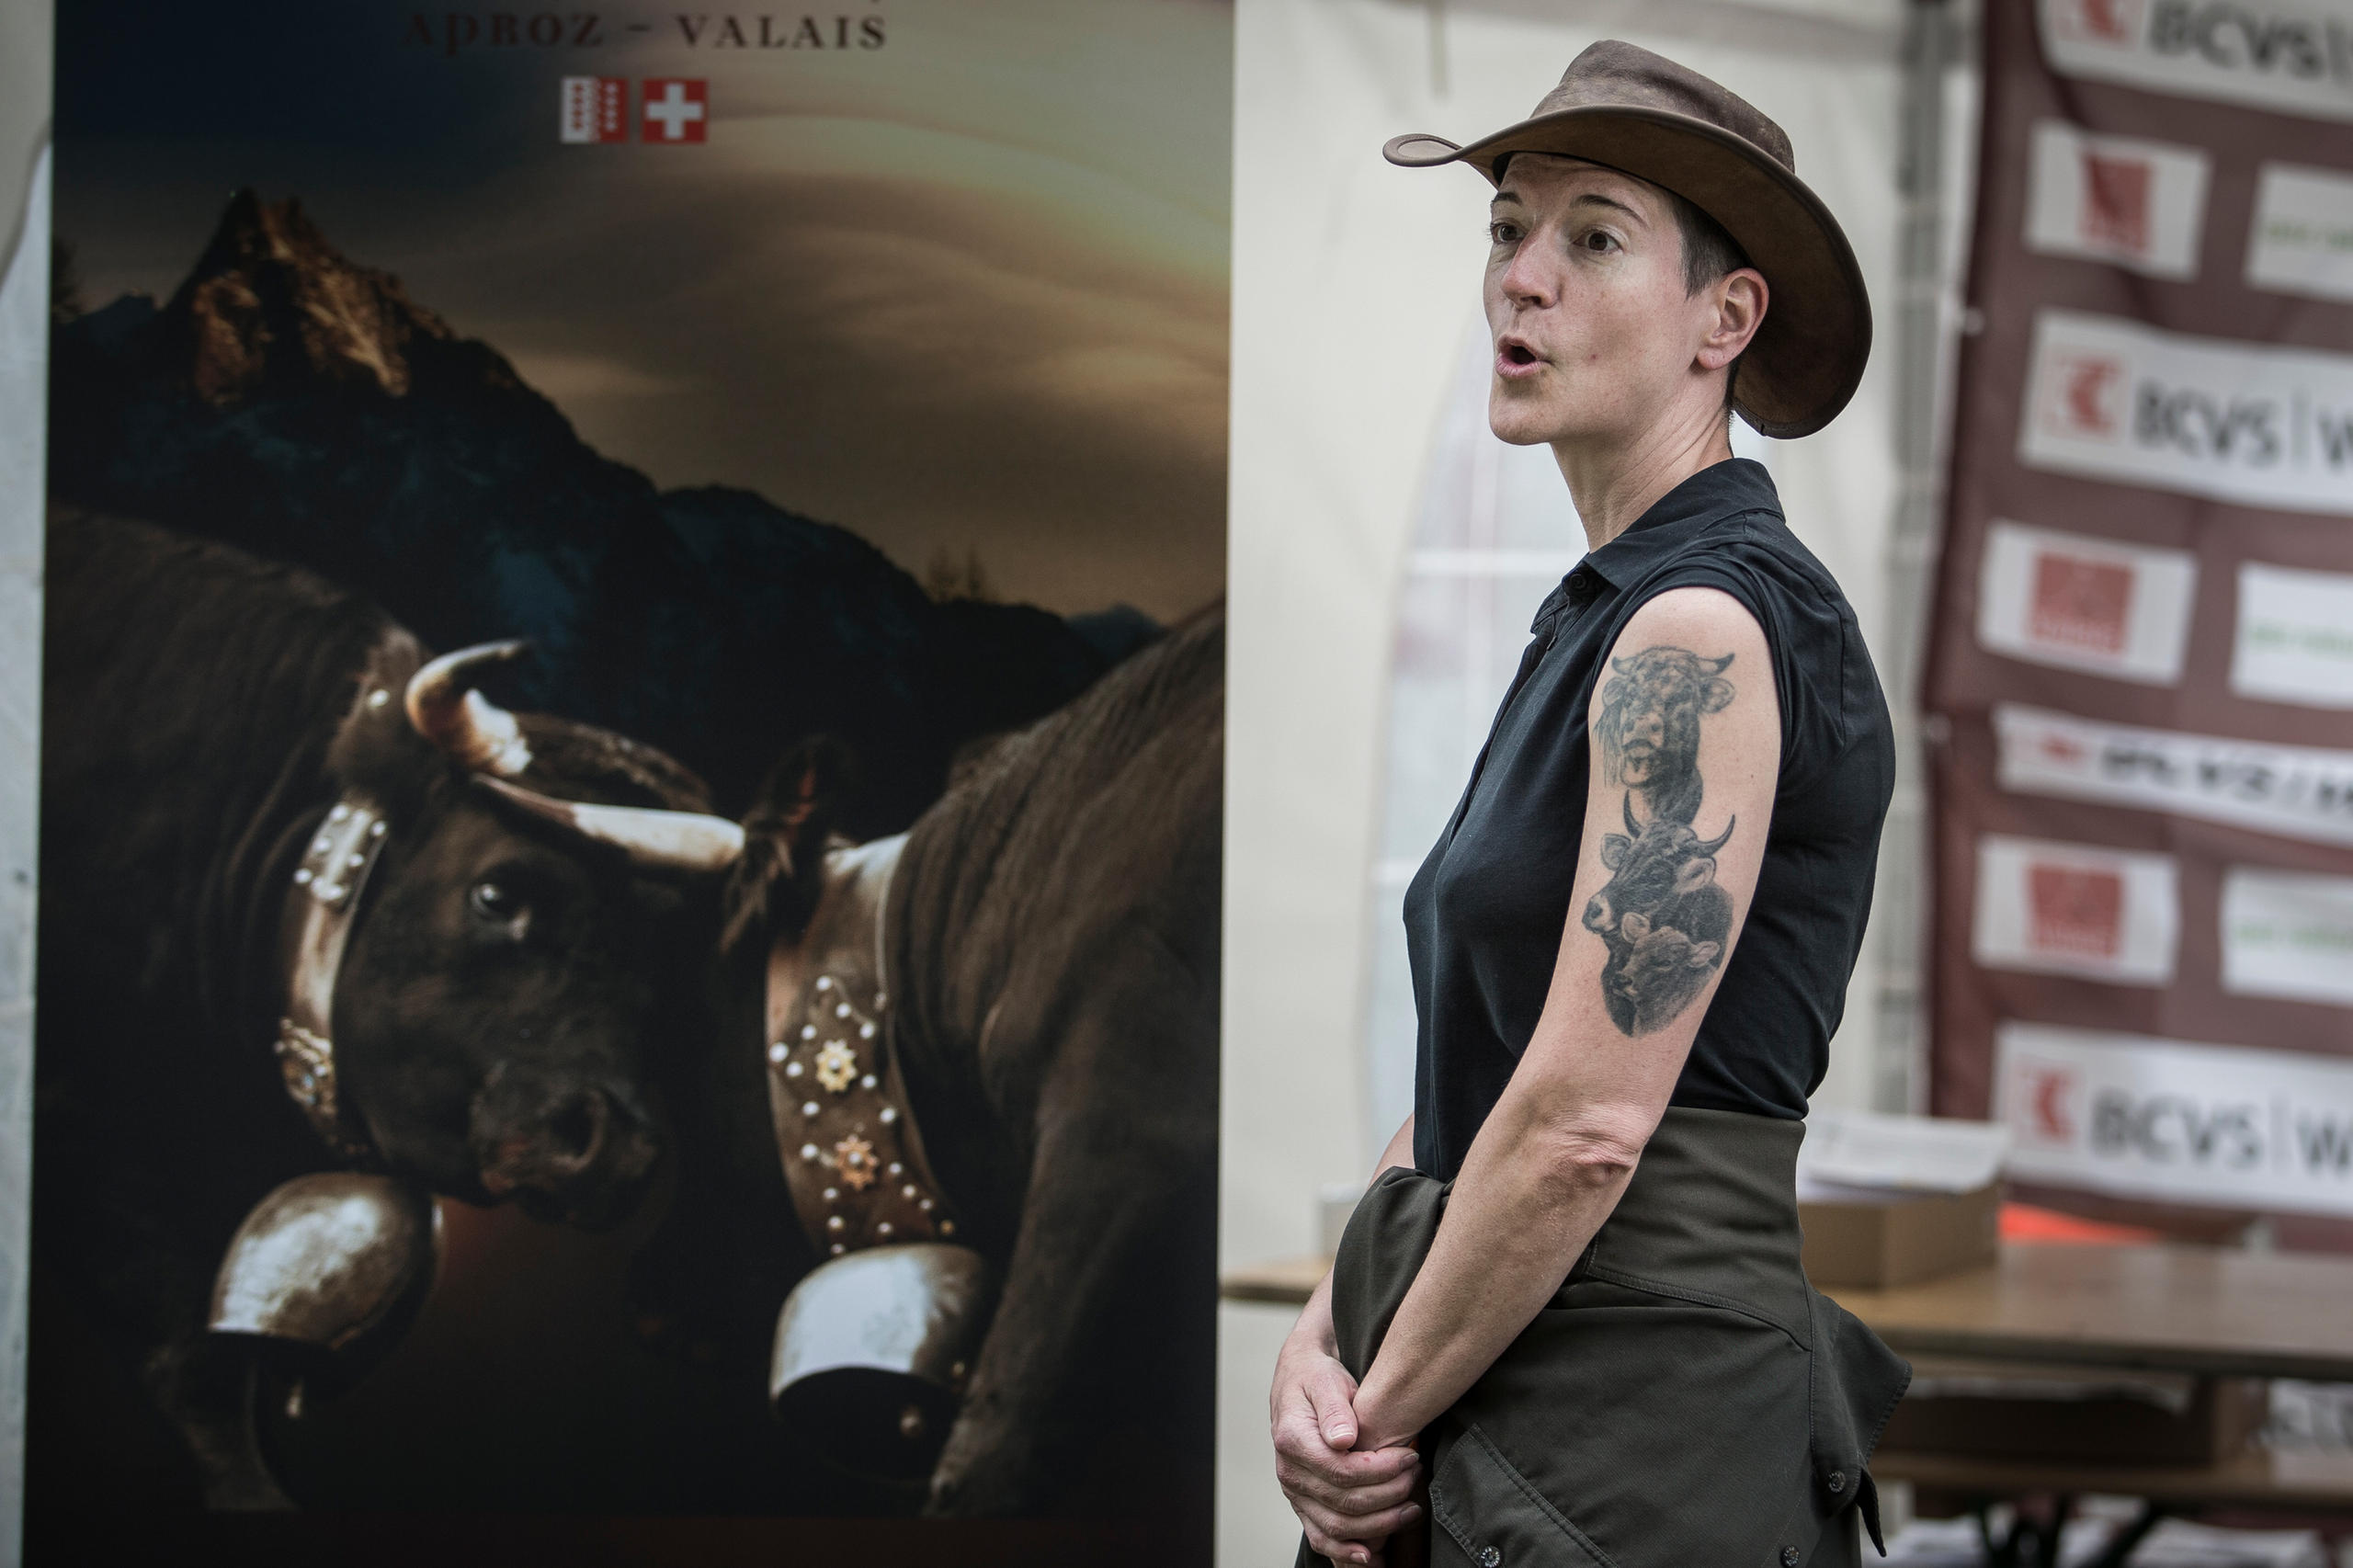 Mulher com chapéu de cowboy em frente a um poster de vacas